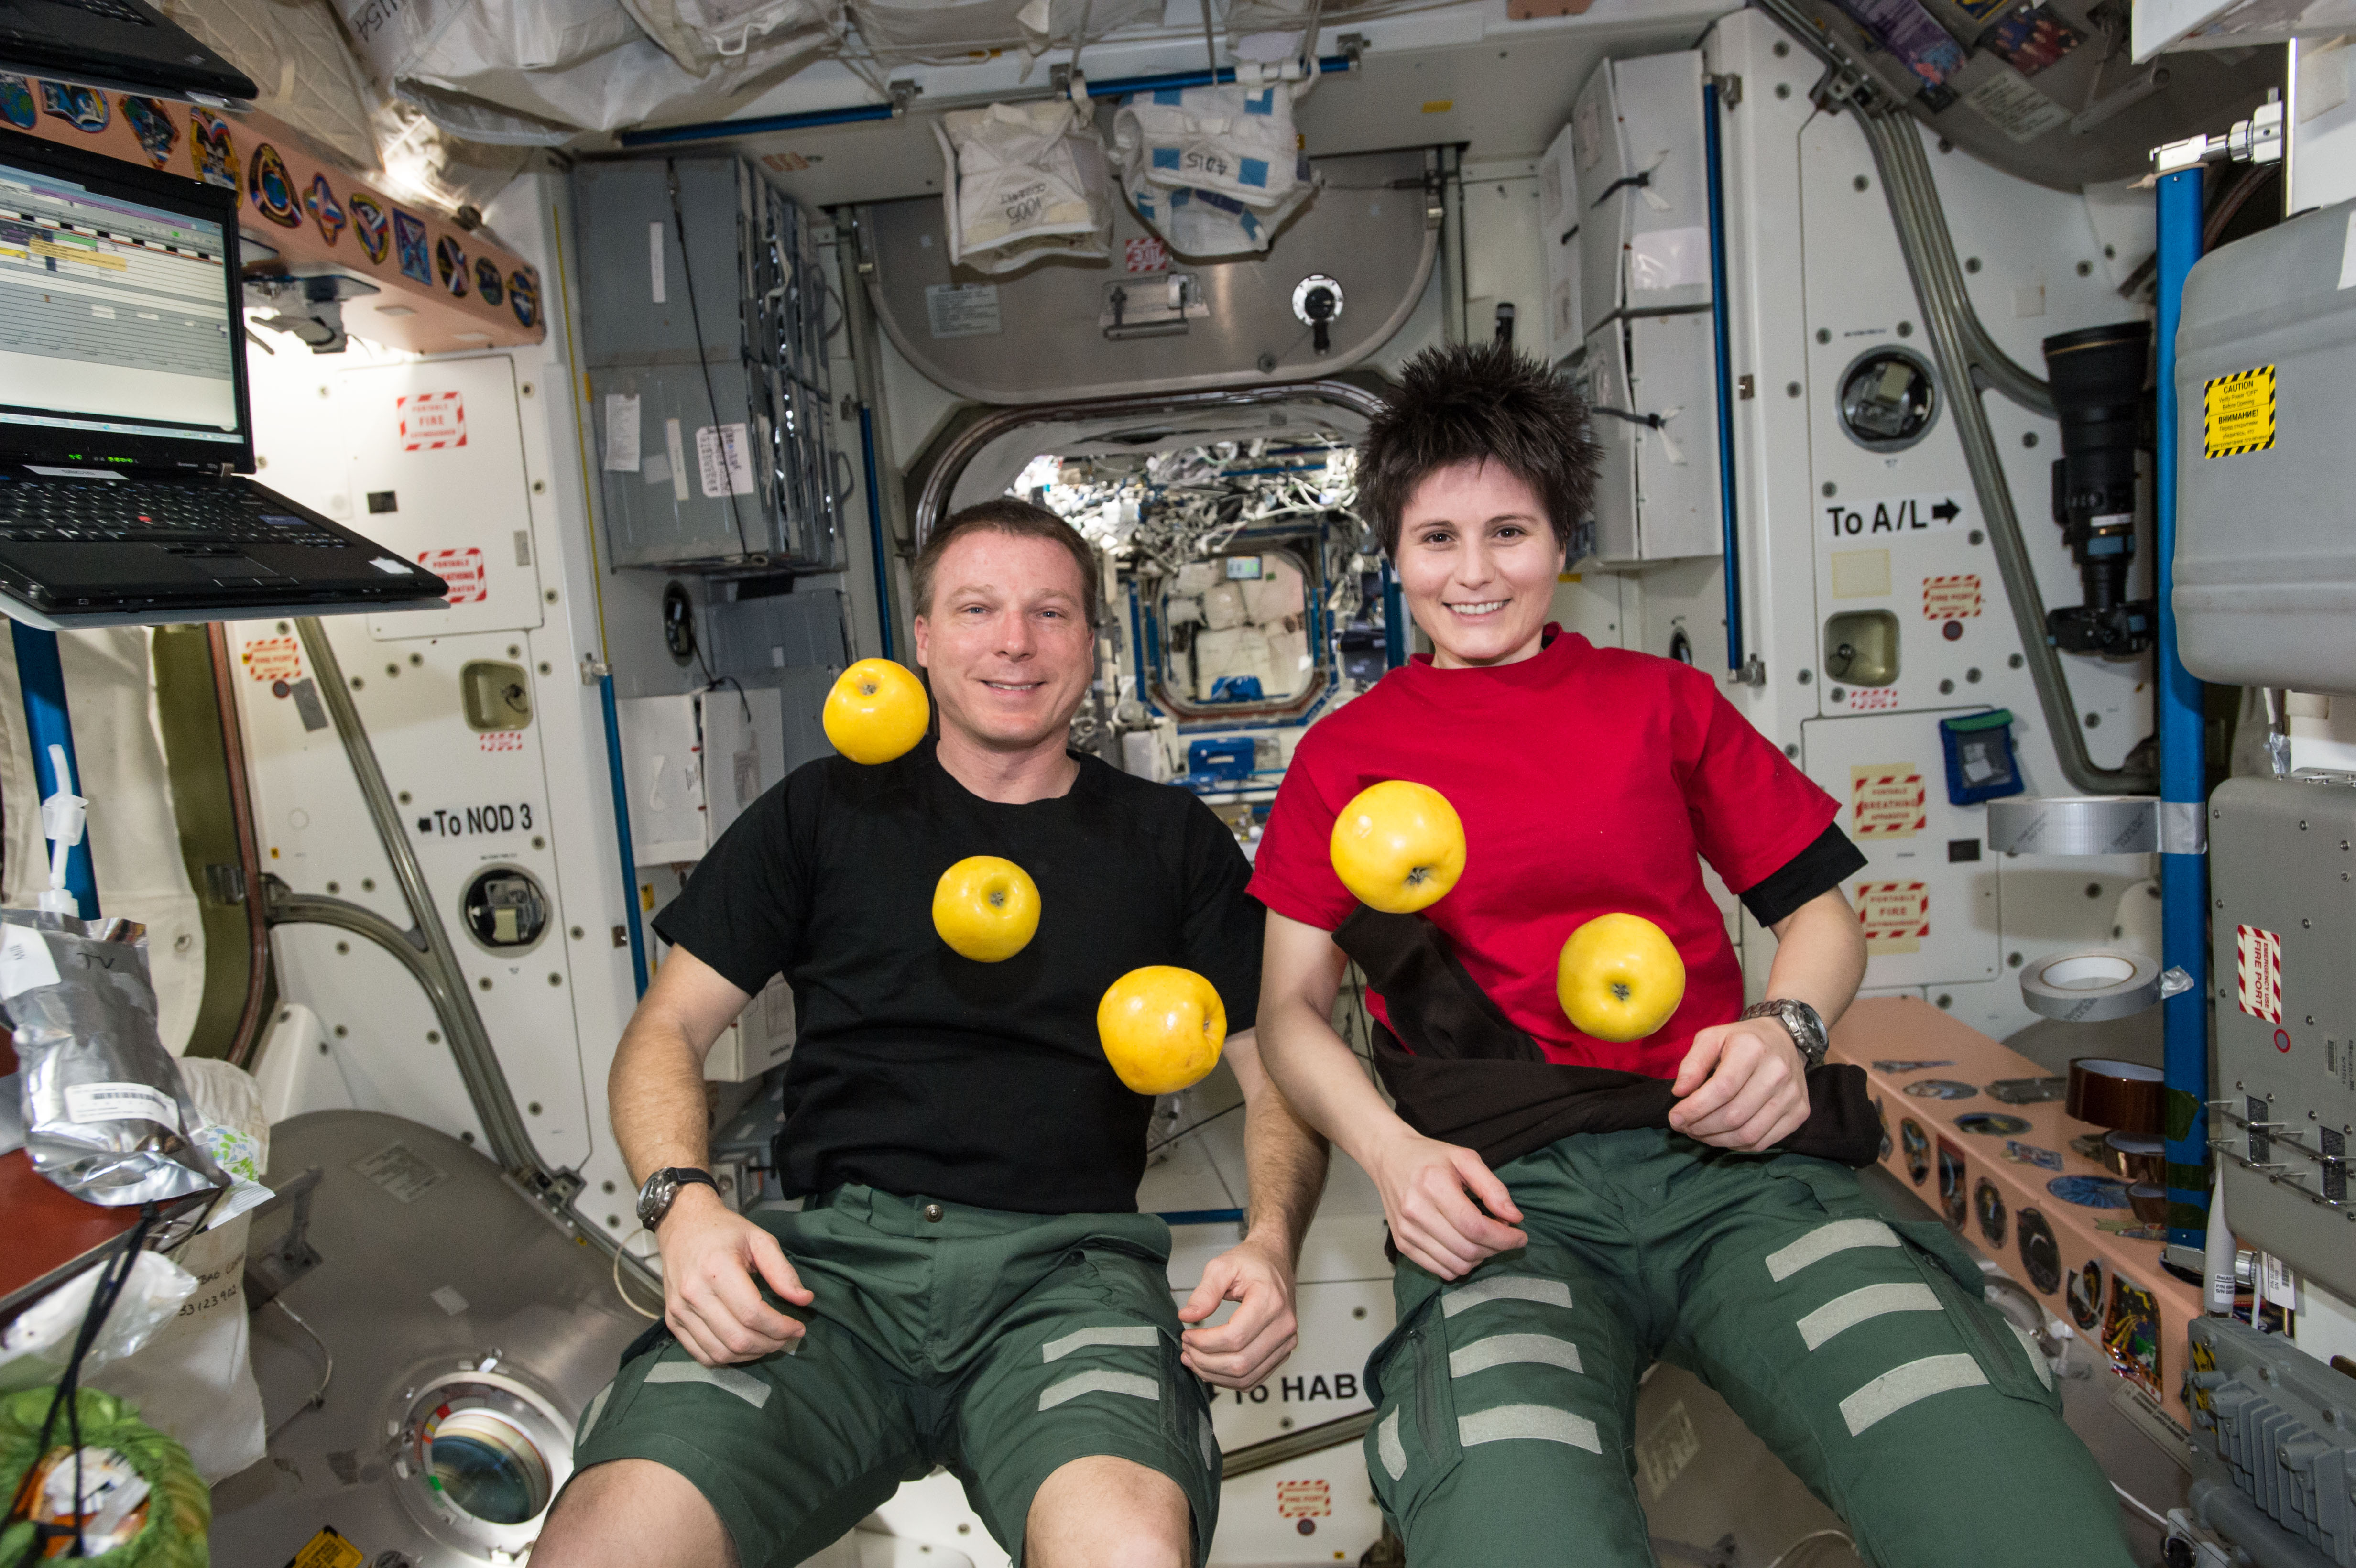 Dans l'ISS, il n'y a pas d'apesanteur. Tout vole et flotte, même les astronautes. Pas facile de se déplacer ! © NASA